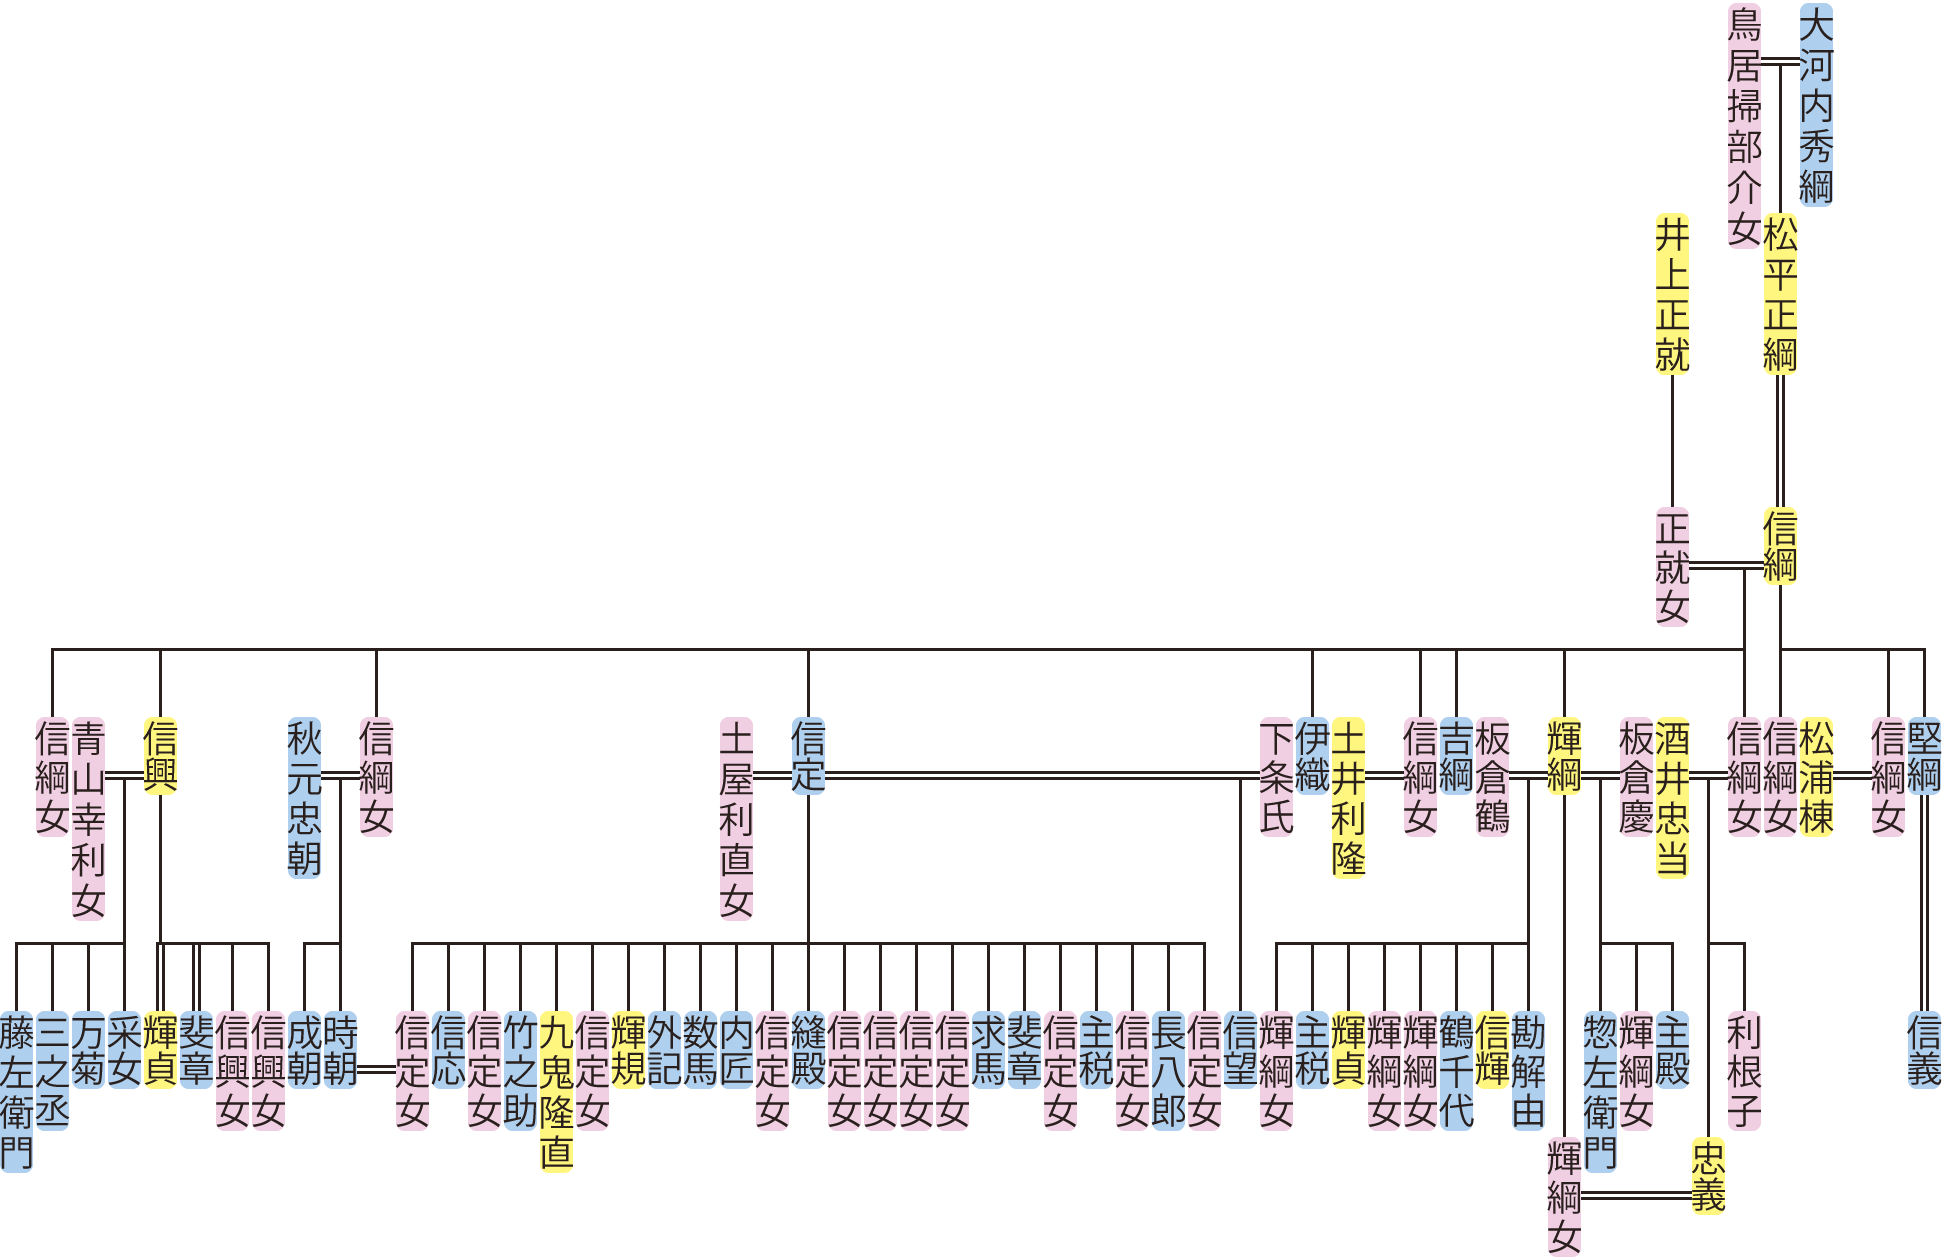 松平信綱の系図